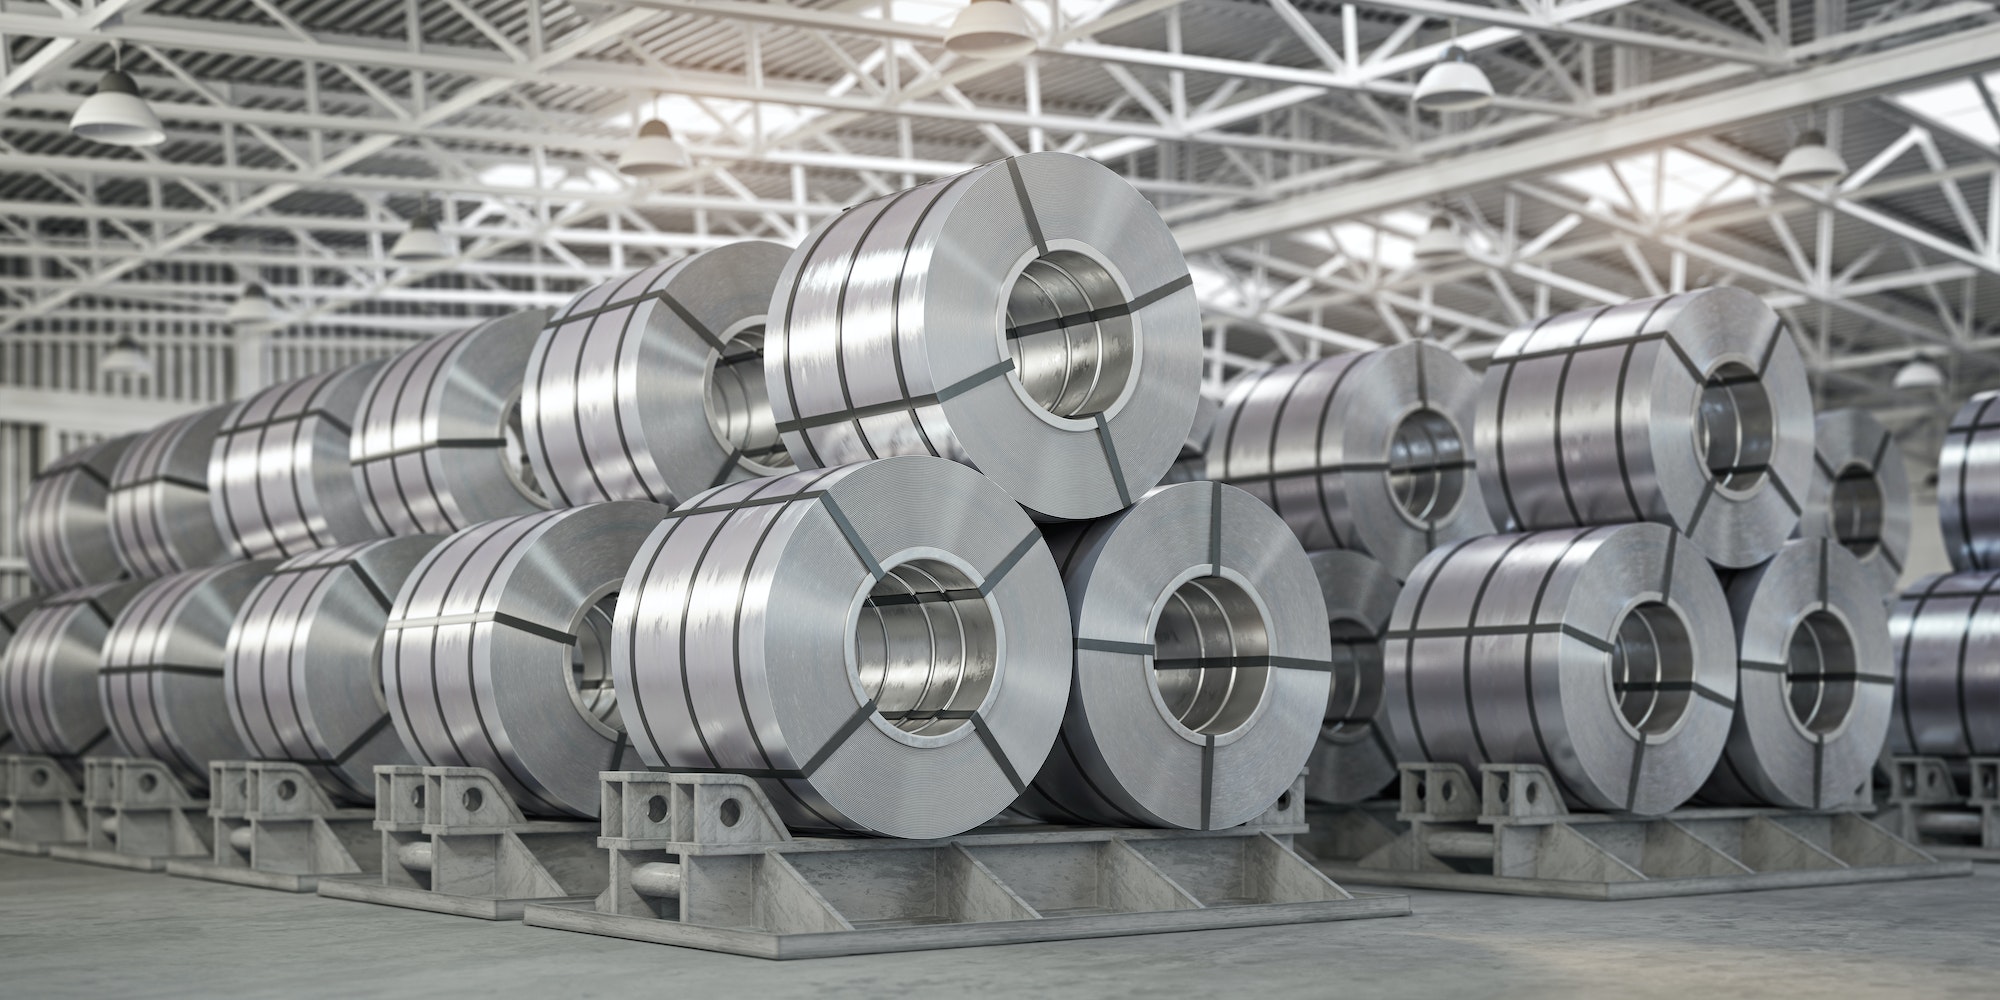 Rolls of metal sheet. Zinc, aluminium or steel sheet rolls on warehouse in factory.